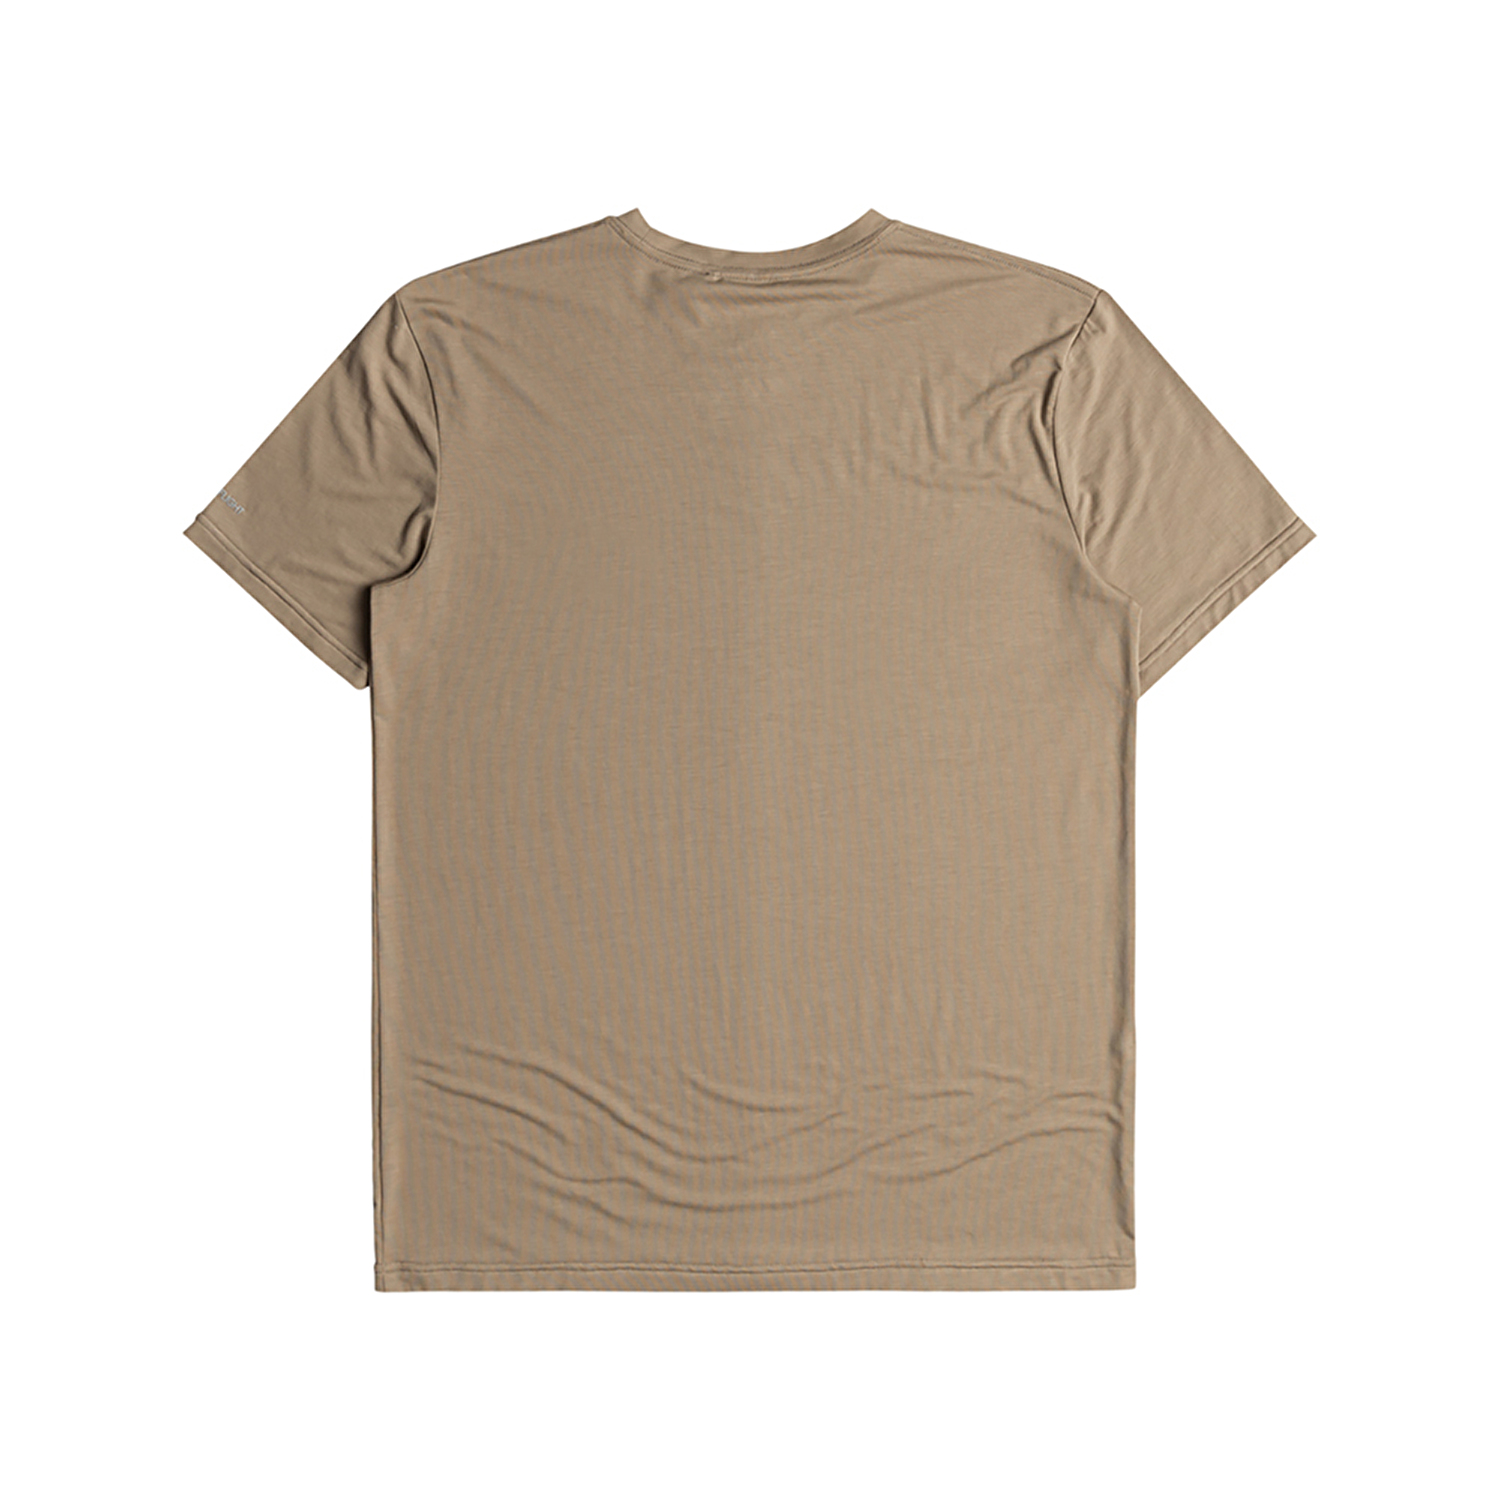 Quiksilver Coastal Run Erkek Kısa Kollu T-Shirt